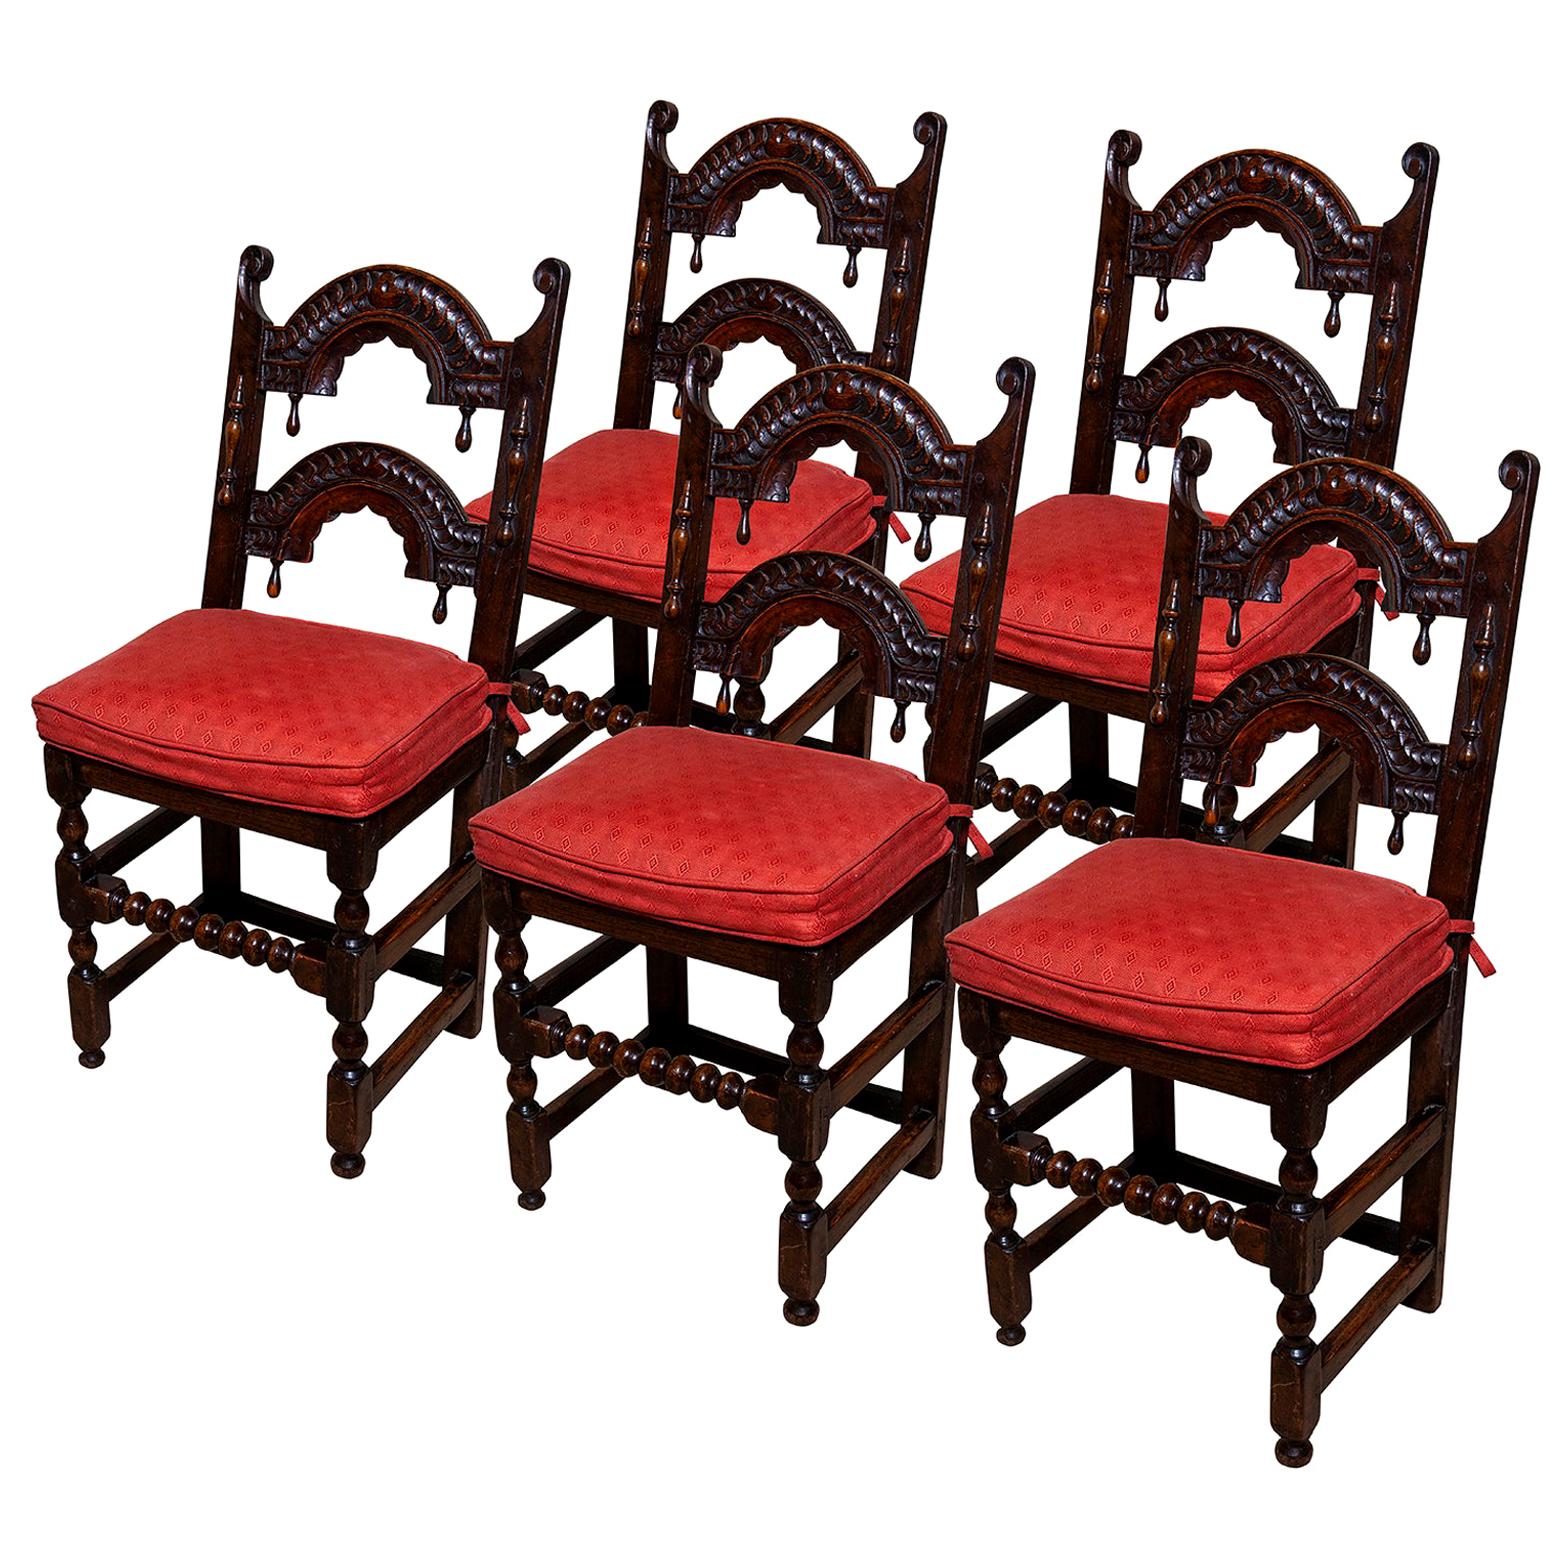 Ensemble de 5 chaises baroques jacobéennes anciennes en chêne de style maison de campagne architecturale